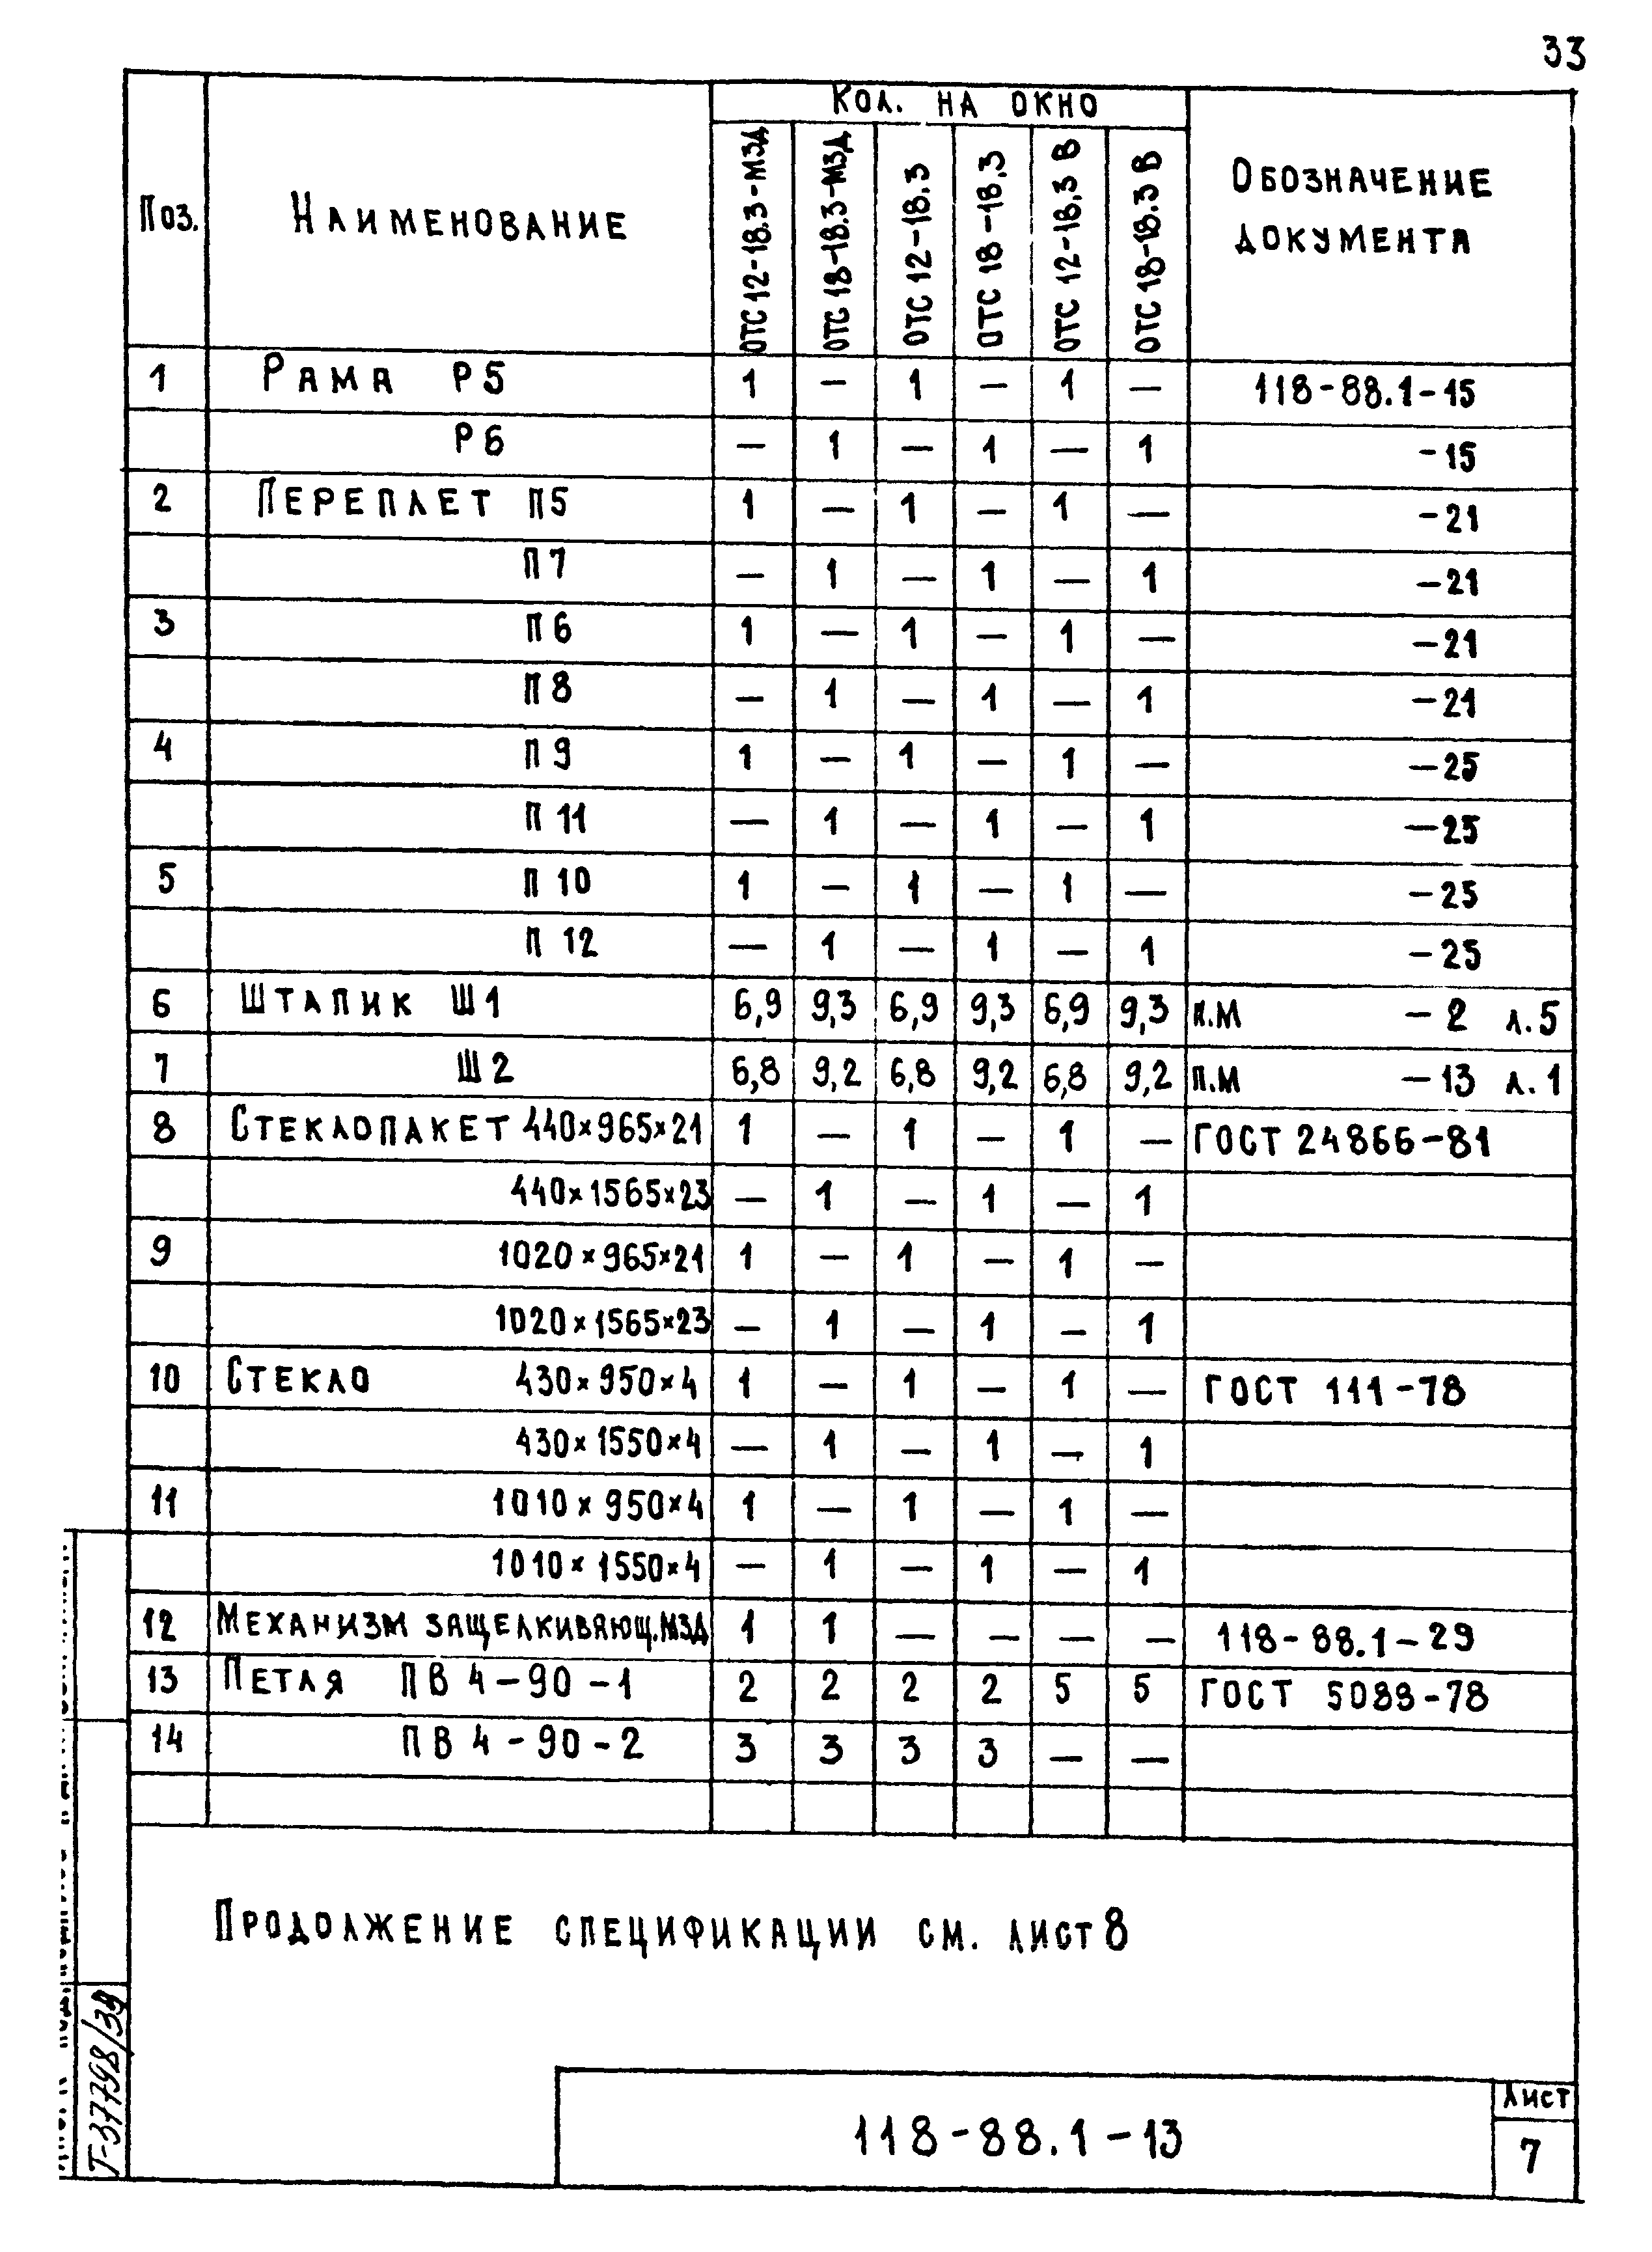 Шифр 118-88